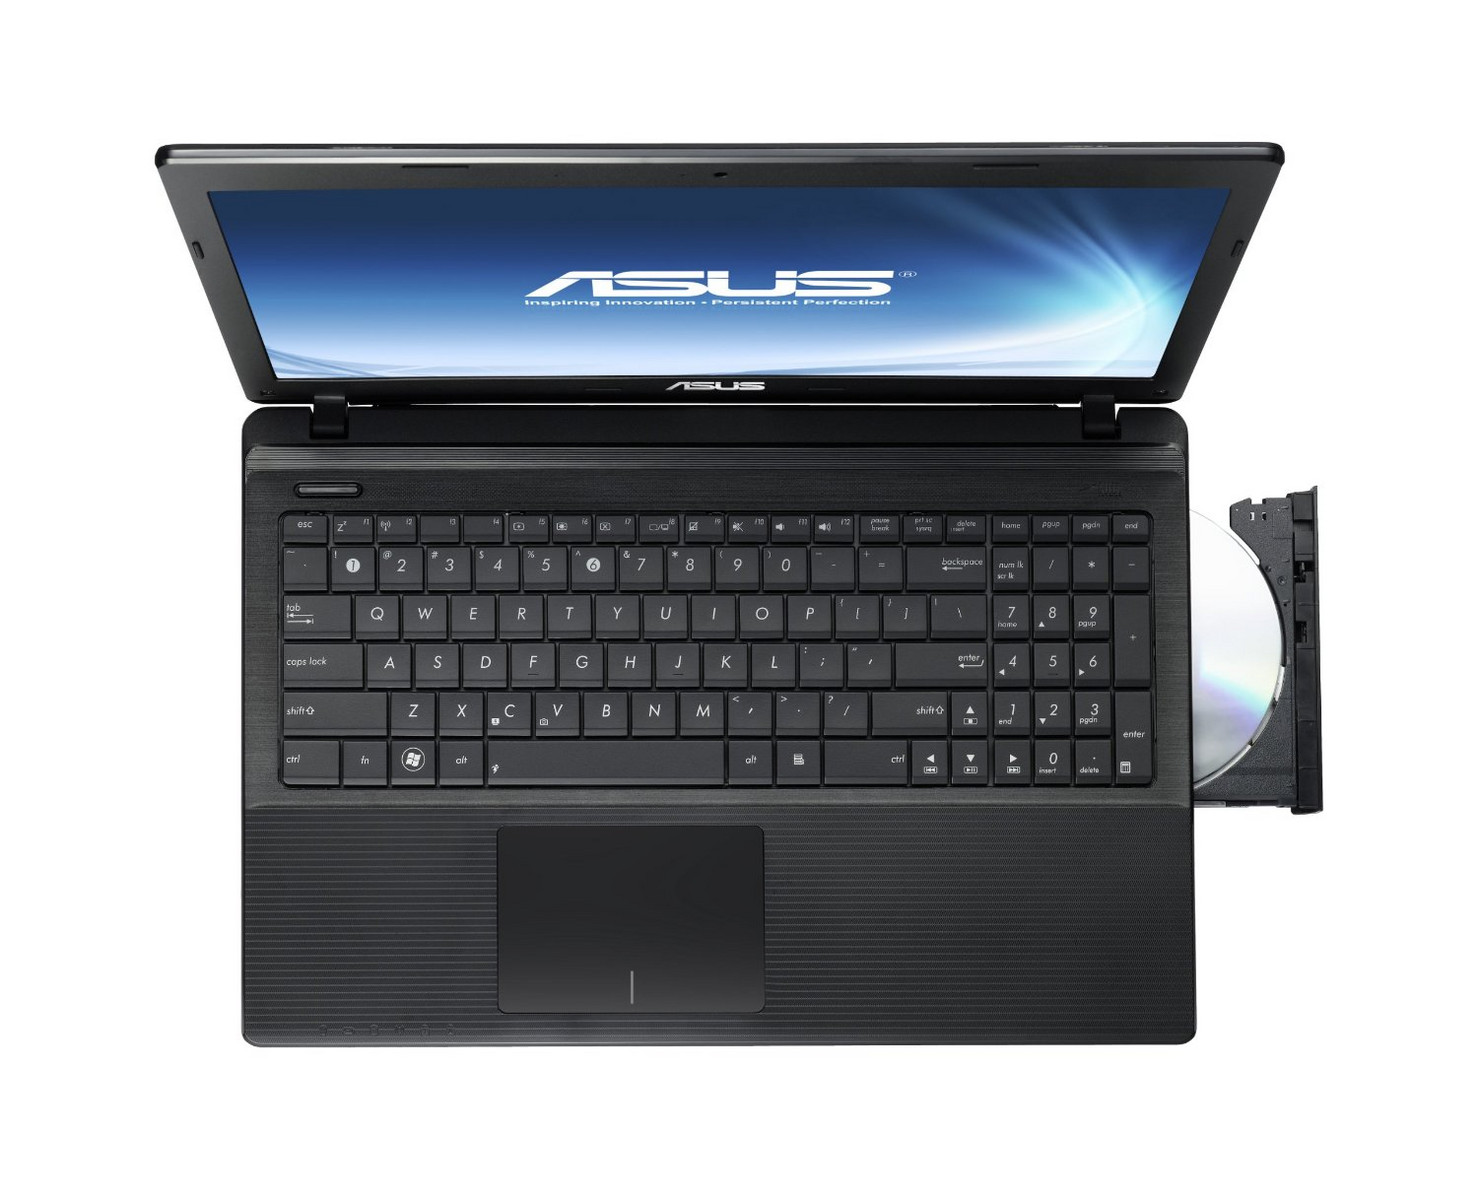 Asus X55C-DS31 - Notebookcheck.net External Reviews